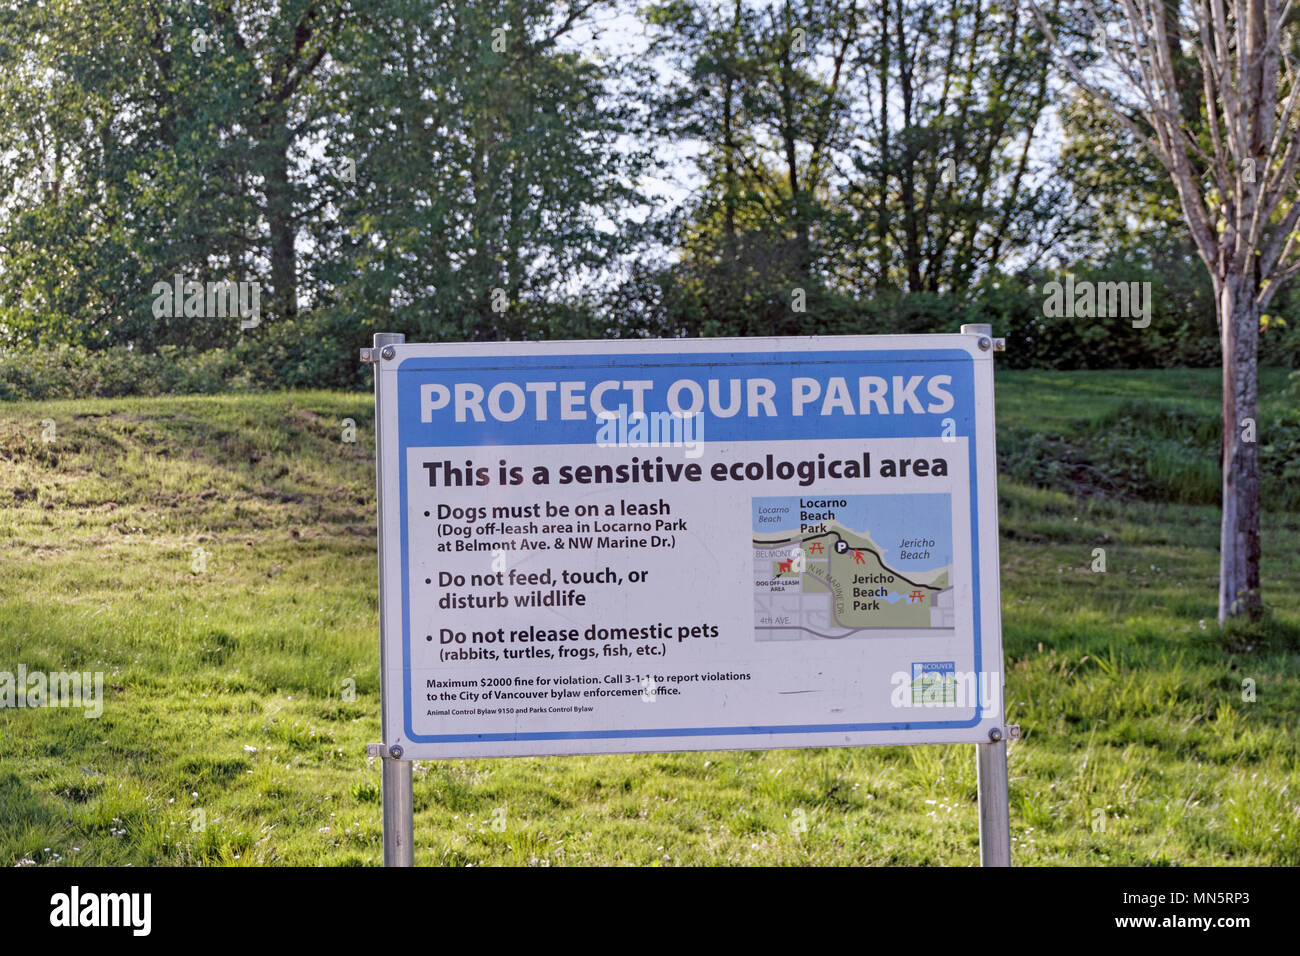 Proteggere i nostri parchi di Jericho Beach Park area ecologica, Vancouver, BC, Canada Foto Stock